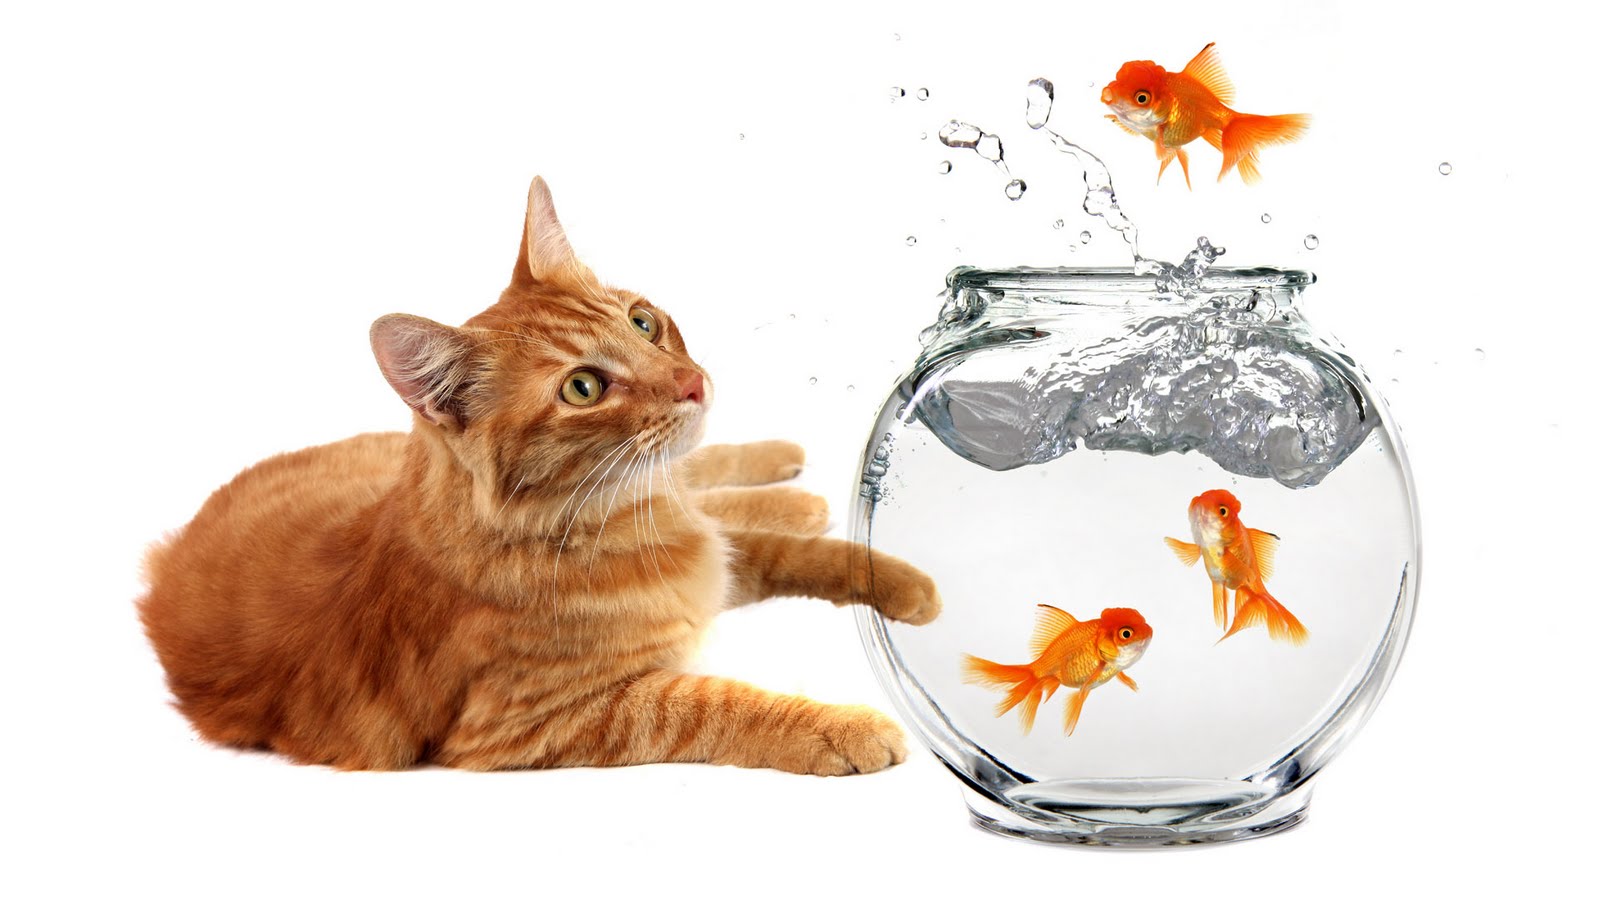 foto di gatti per carta da parati,pesce rosso,gatto,felidae,gatti di piccola e media taglia,pesce